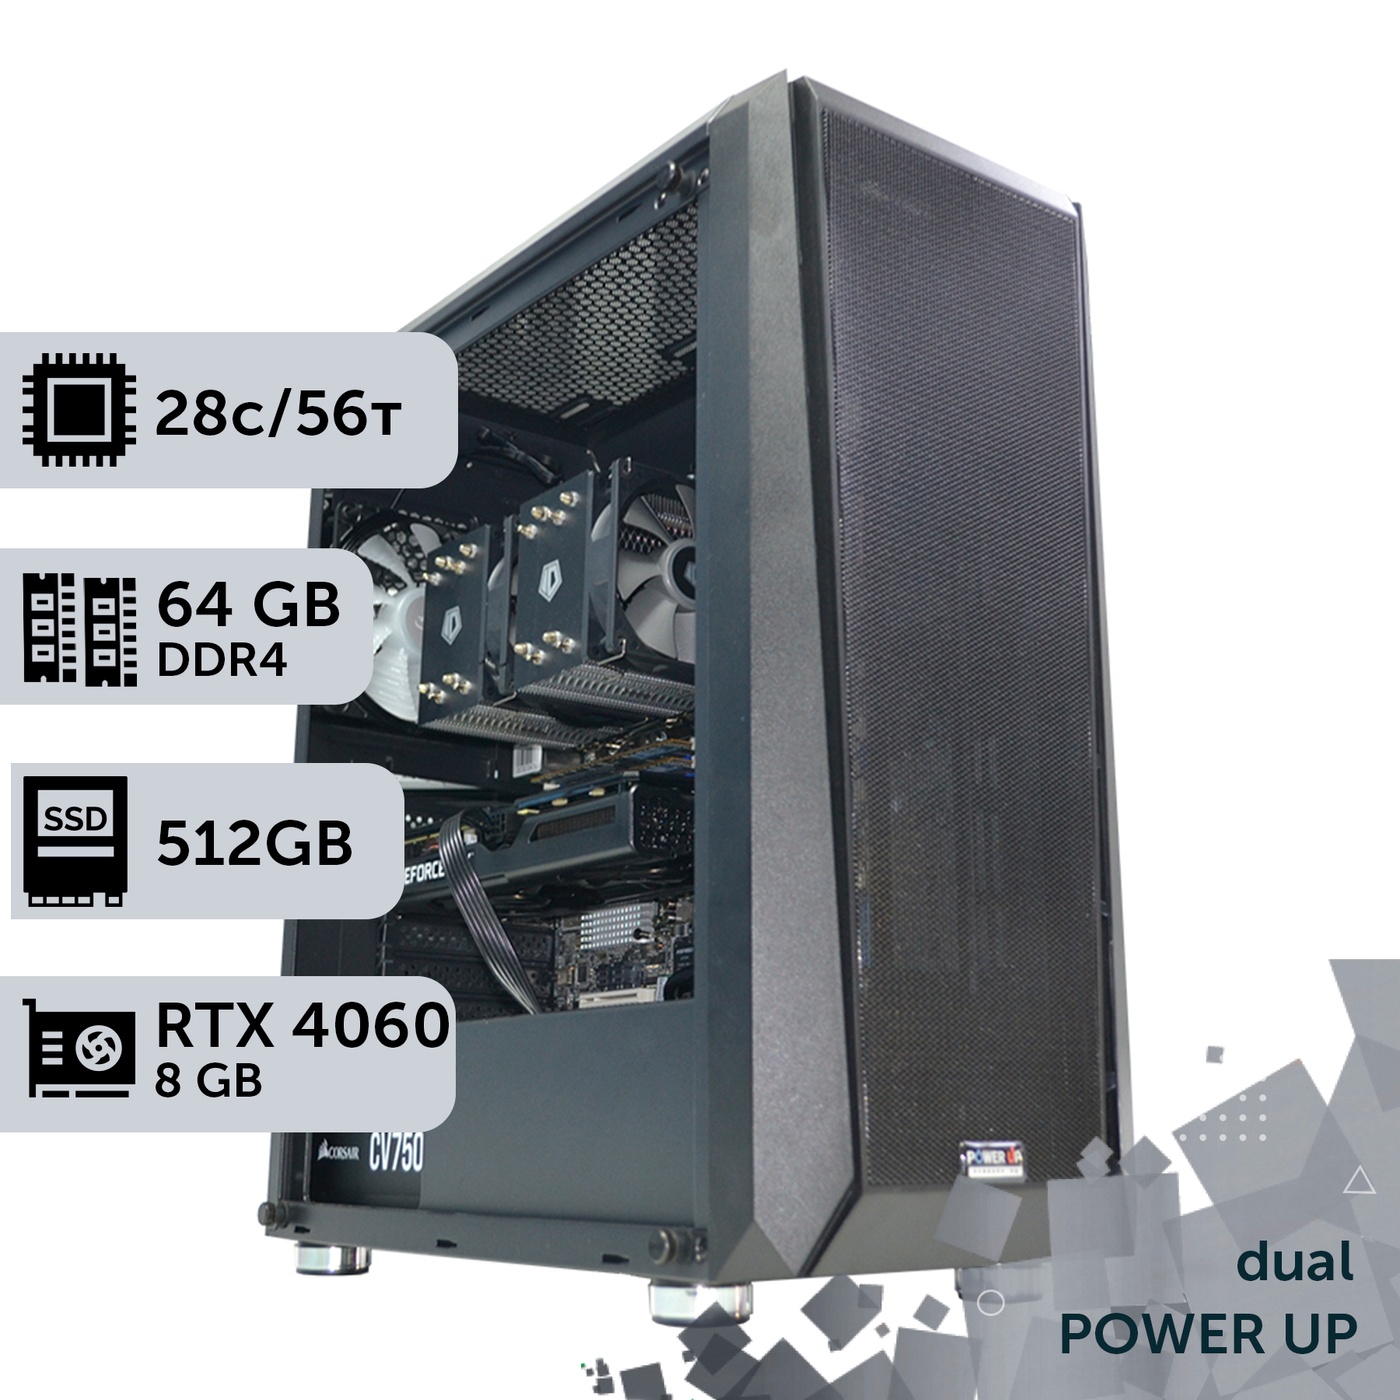 Двухпроцессорная рабочая станция PowerUp #425 Xeon E5 2690 v4 x2/64 GB/HDD 1 TB/SSD 512GB/GeForce RTX 4060 8GB